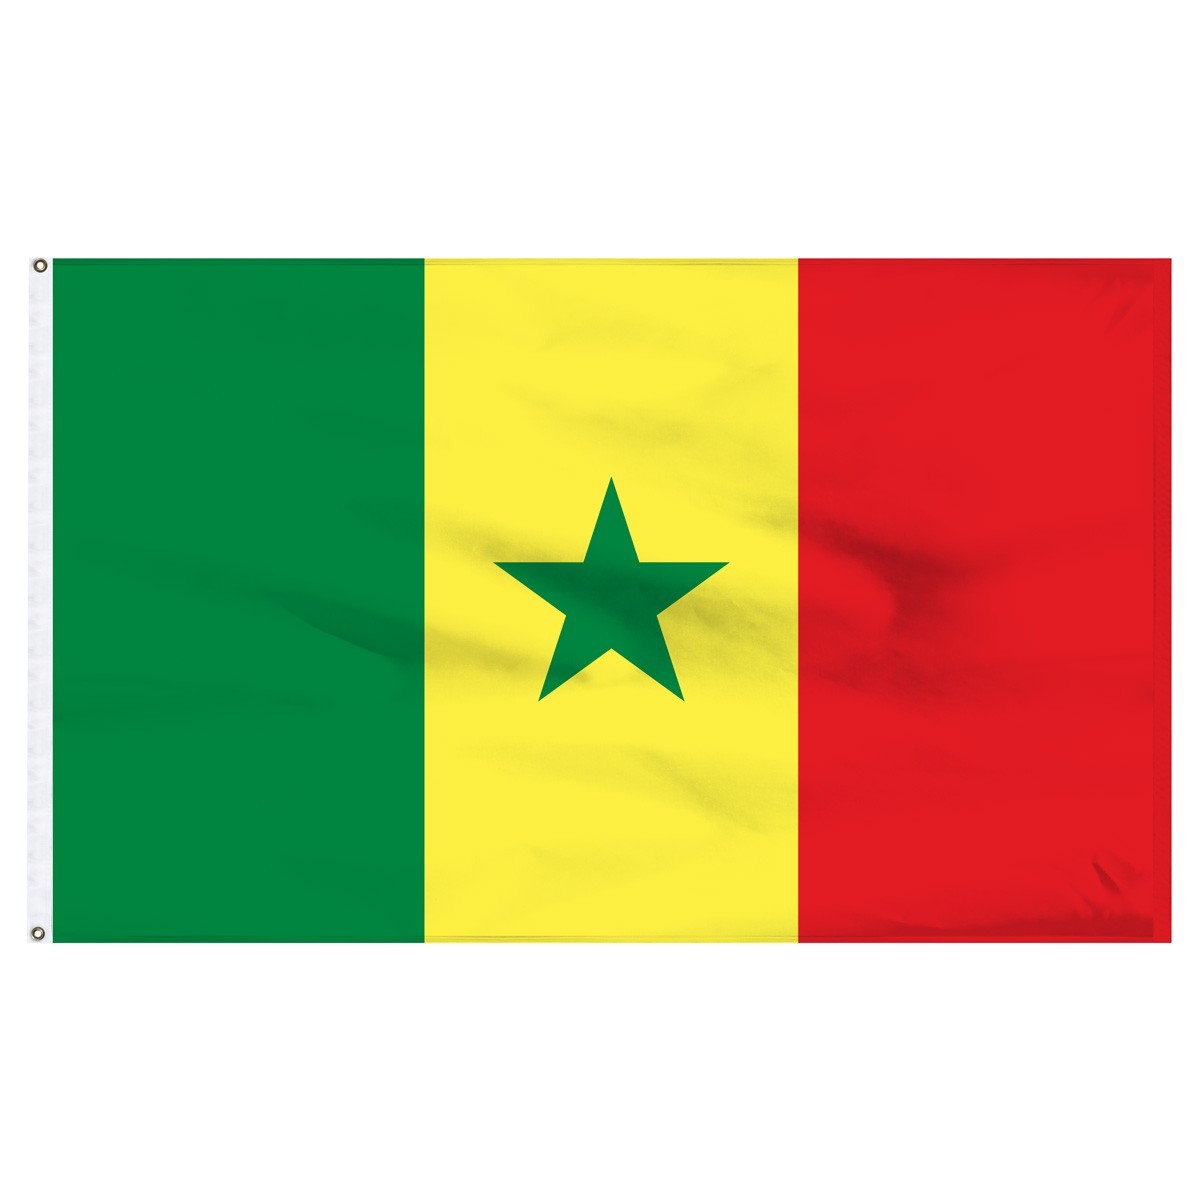 Senegal 2' x 3' Outdoor Nylon Flag